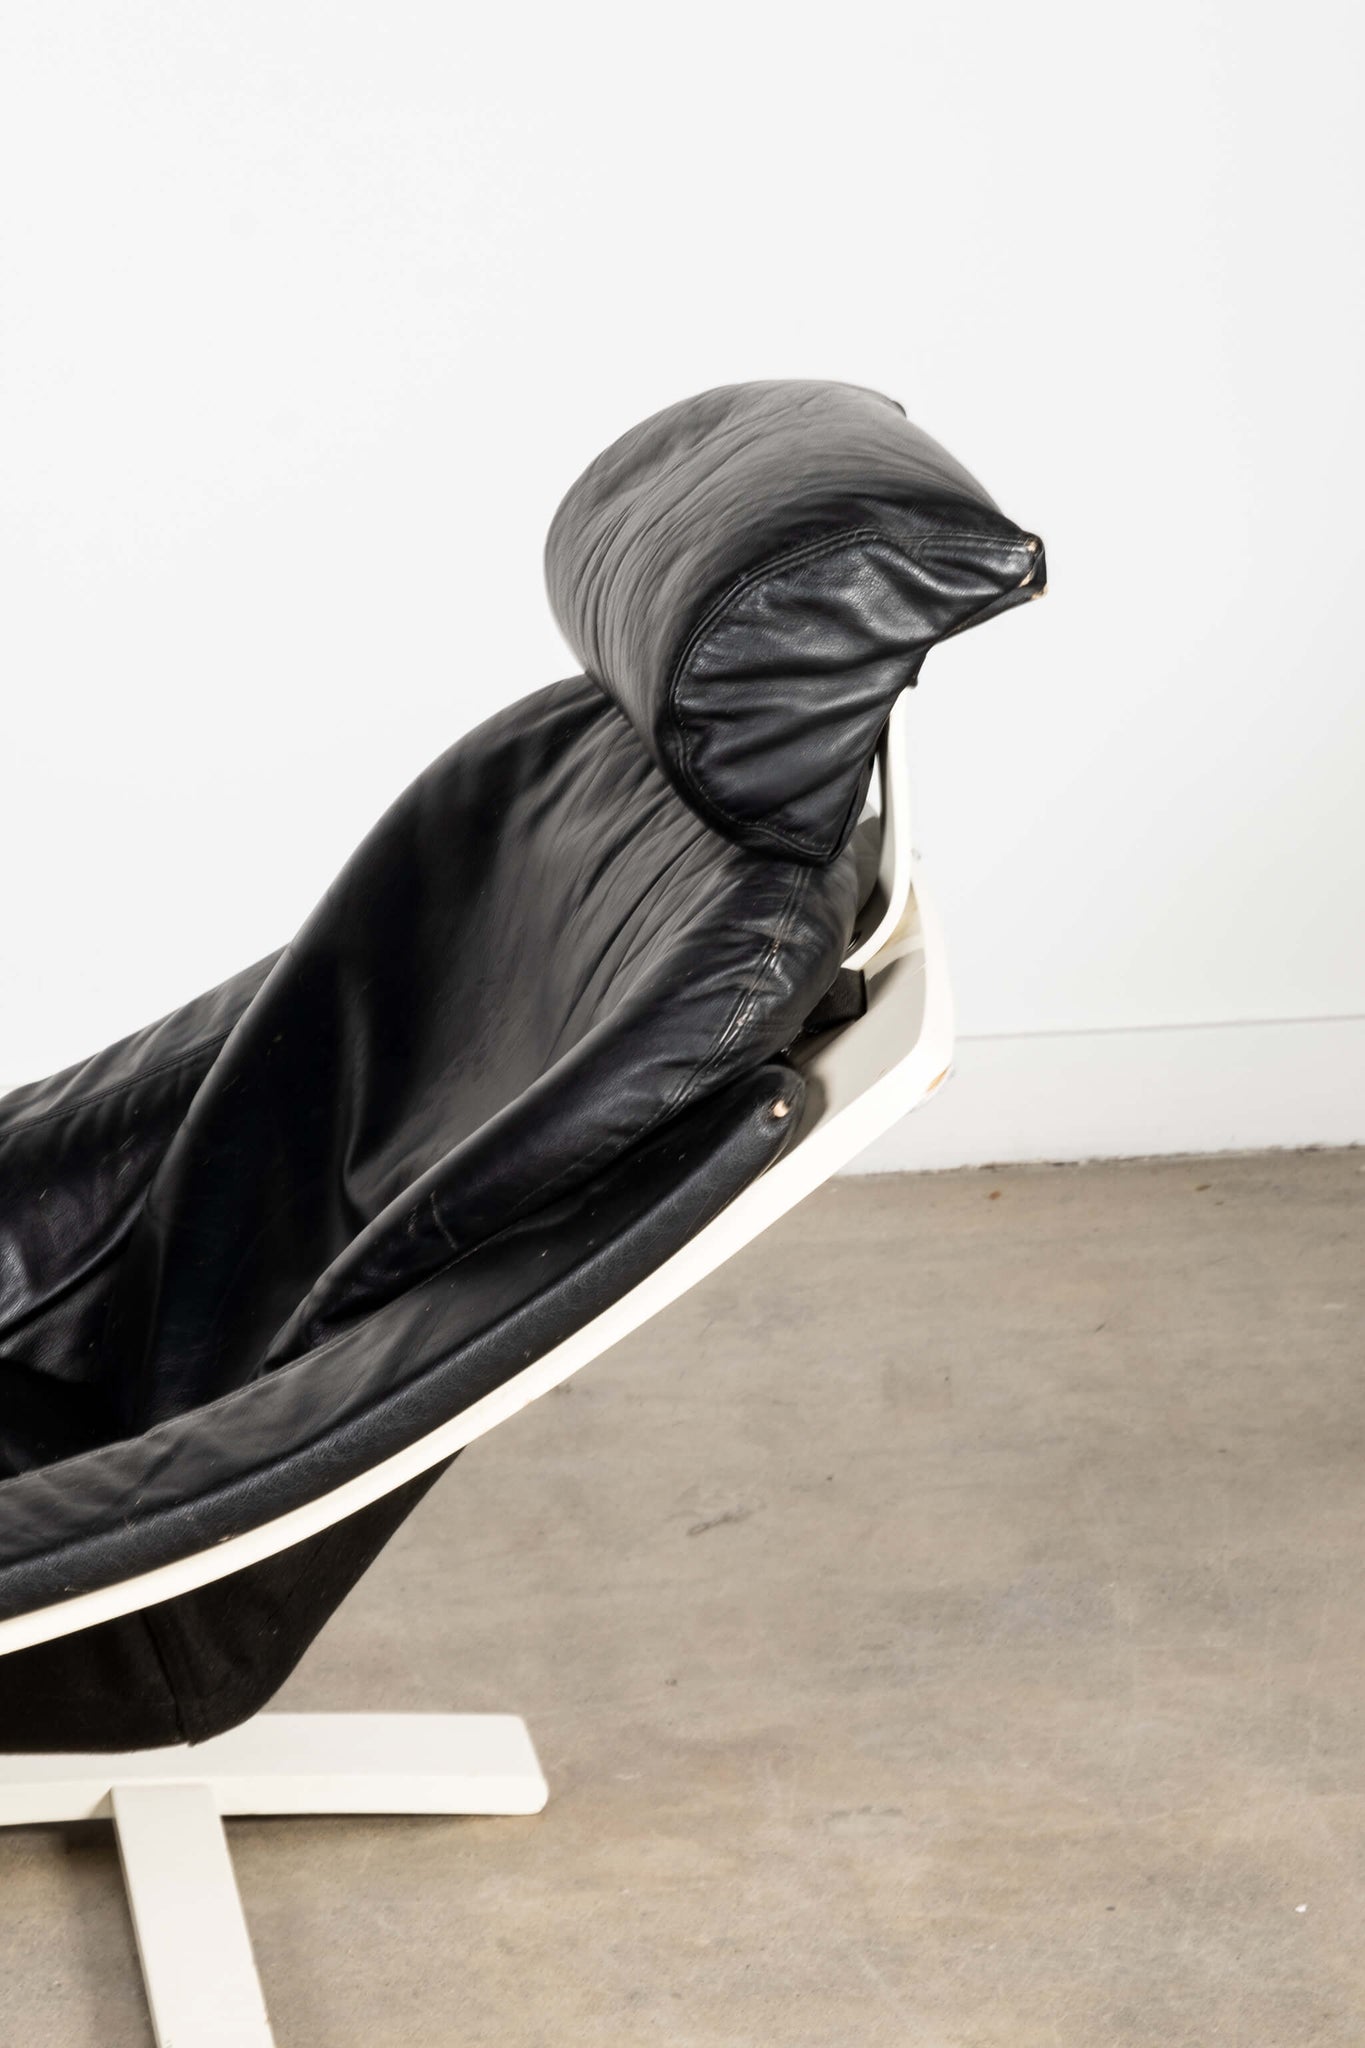 'Kroken' Black Leather Lounge Chair